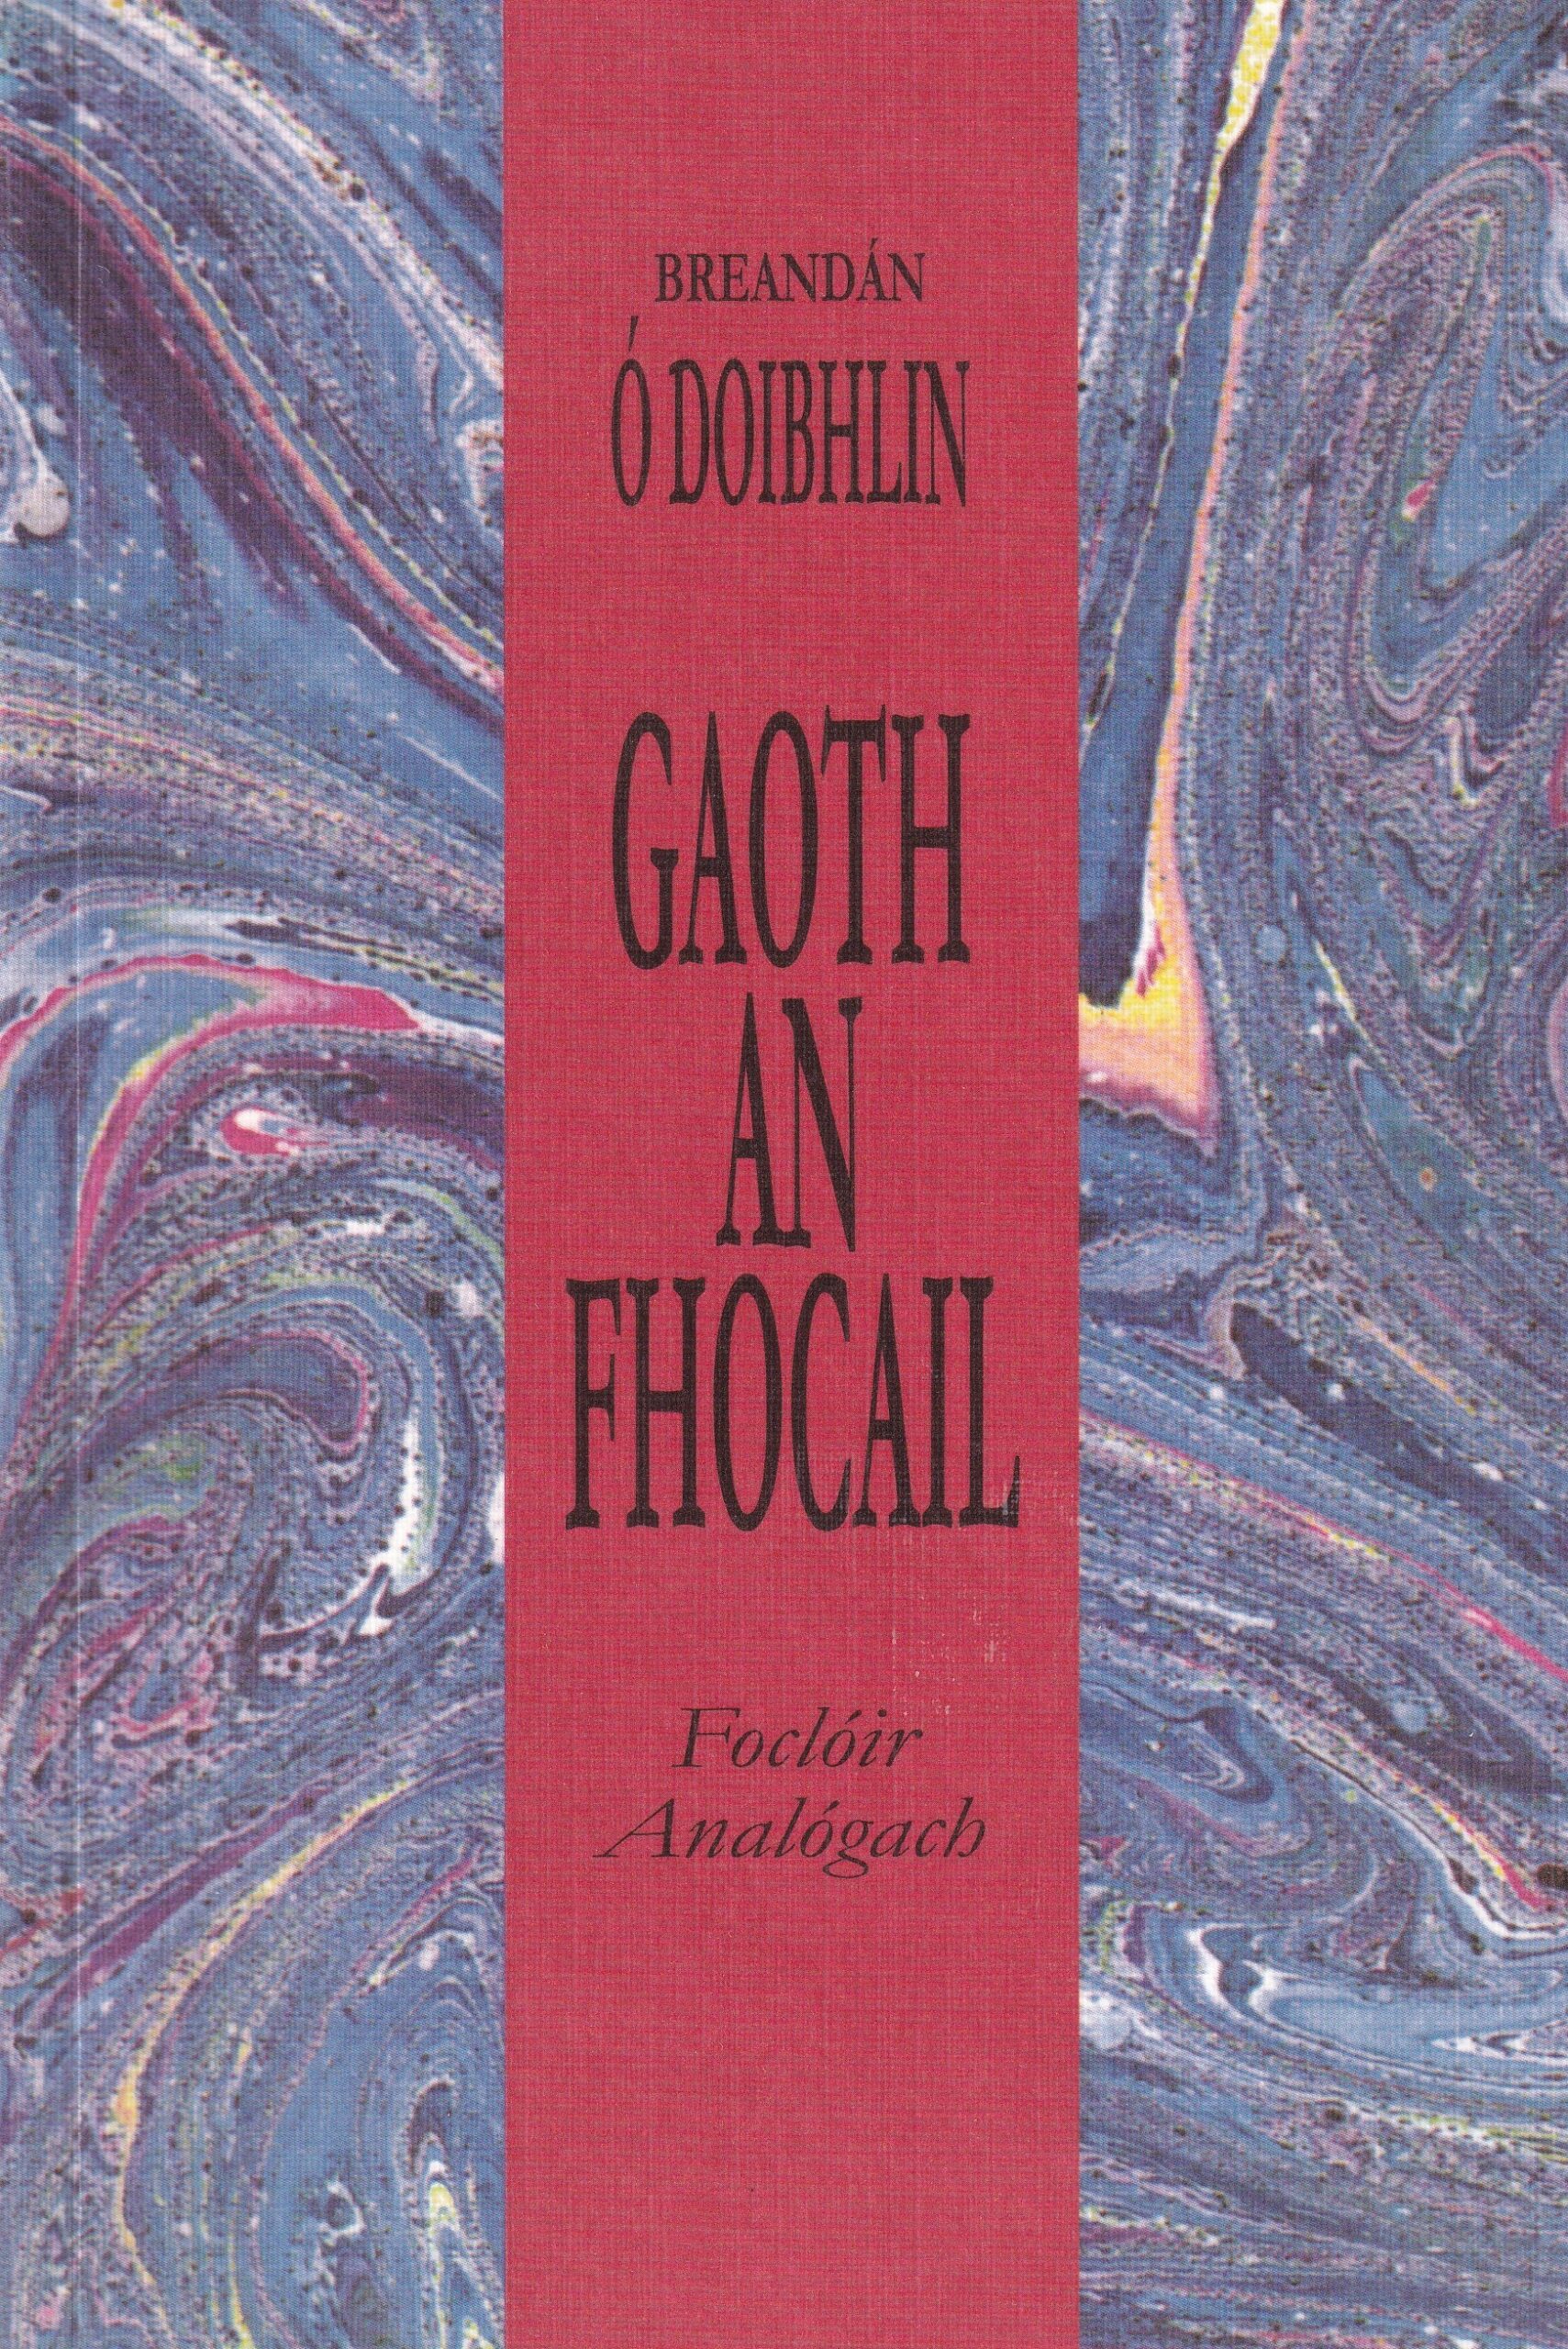 Goath an Fhocail: Foclóir Angalógach | Breandán Ó Doibhlin | Charlie Byrne's